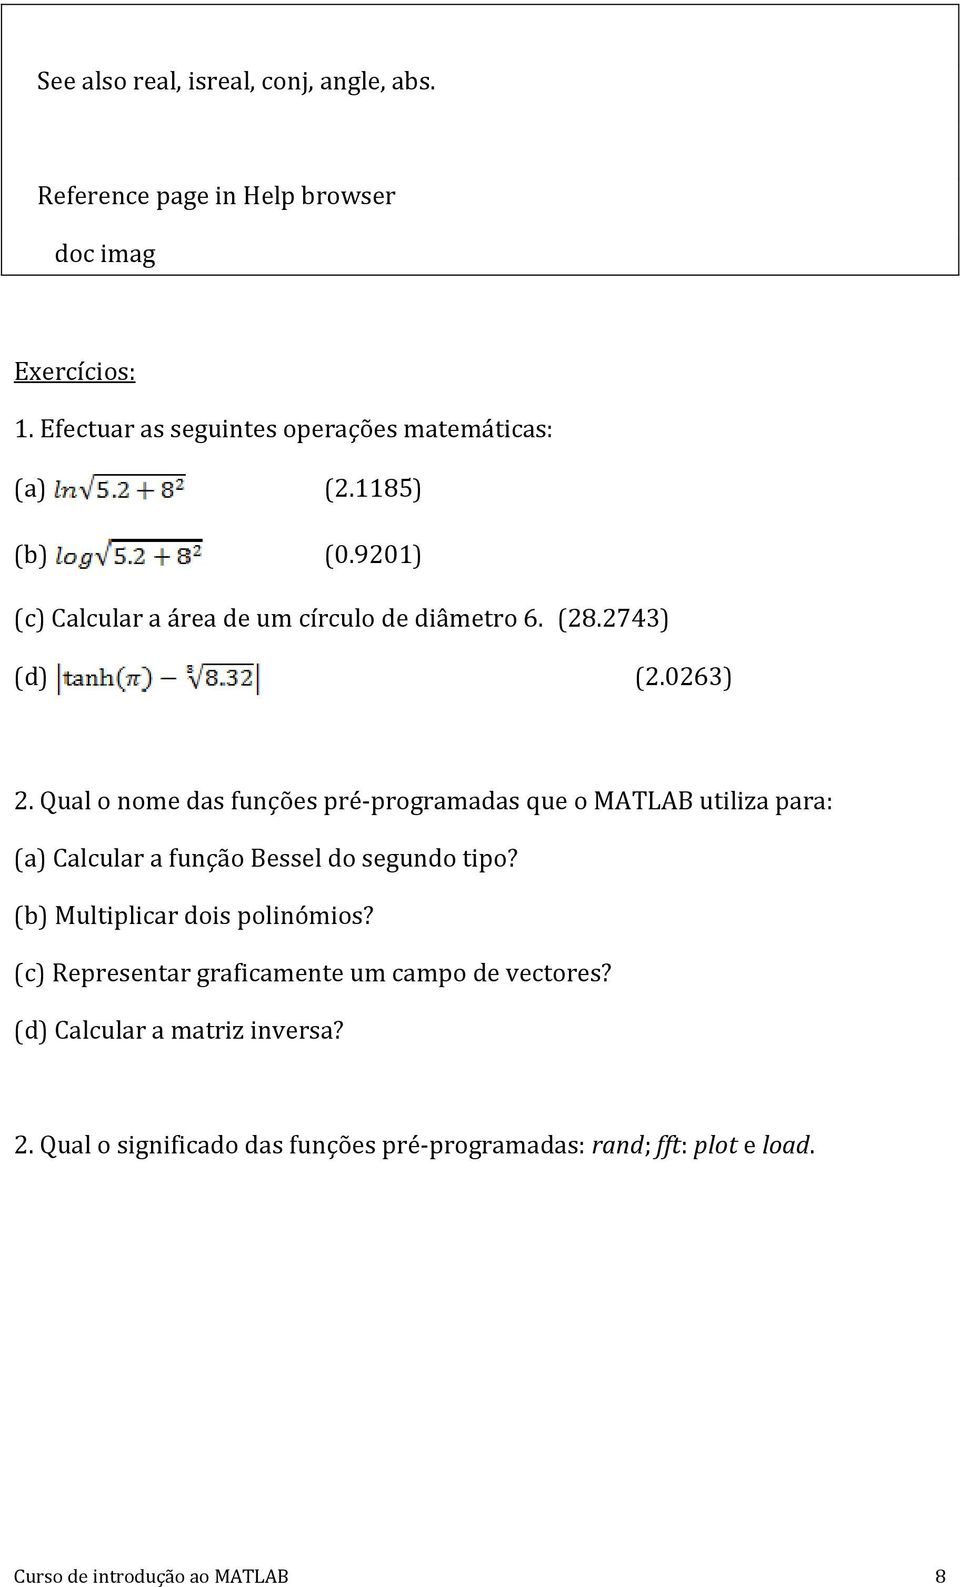 0263) 2. Qual o nome das funções pré-programadas que o MATLAB utiliza para: (a) Calcular a função Bessel do segundo tipo?